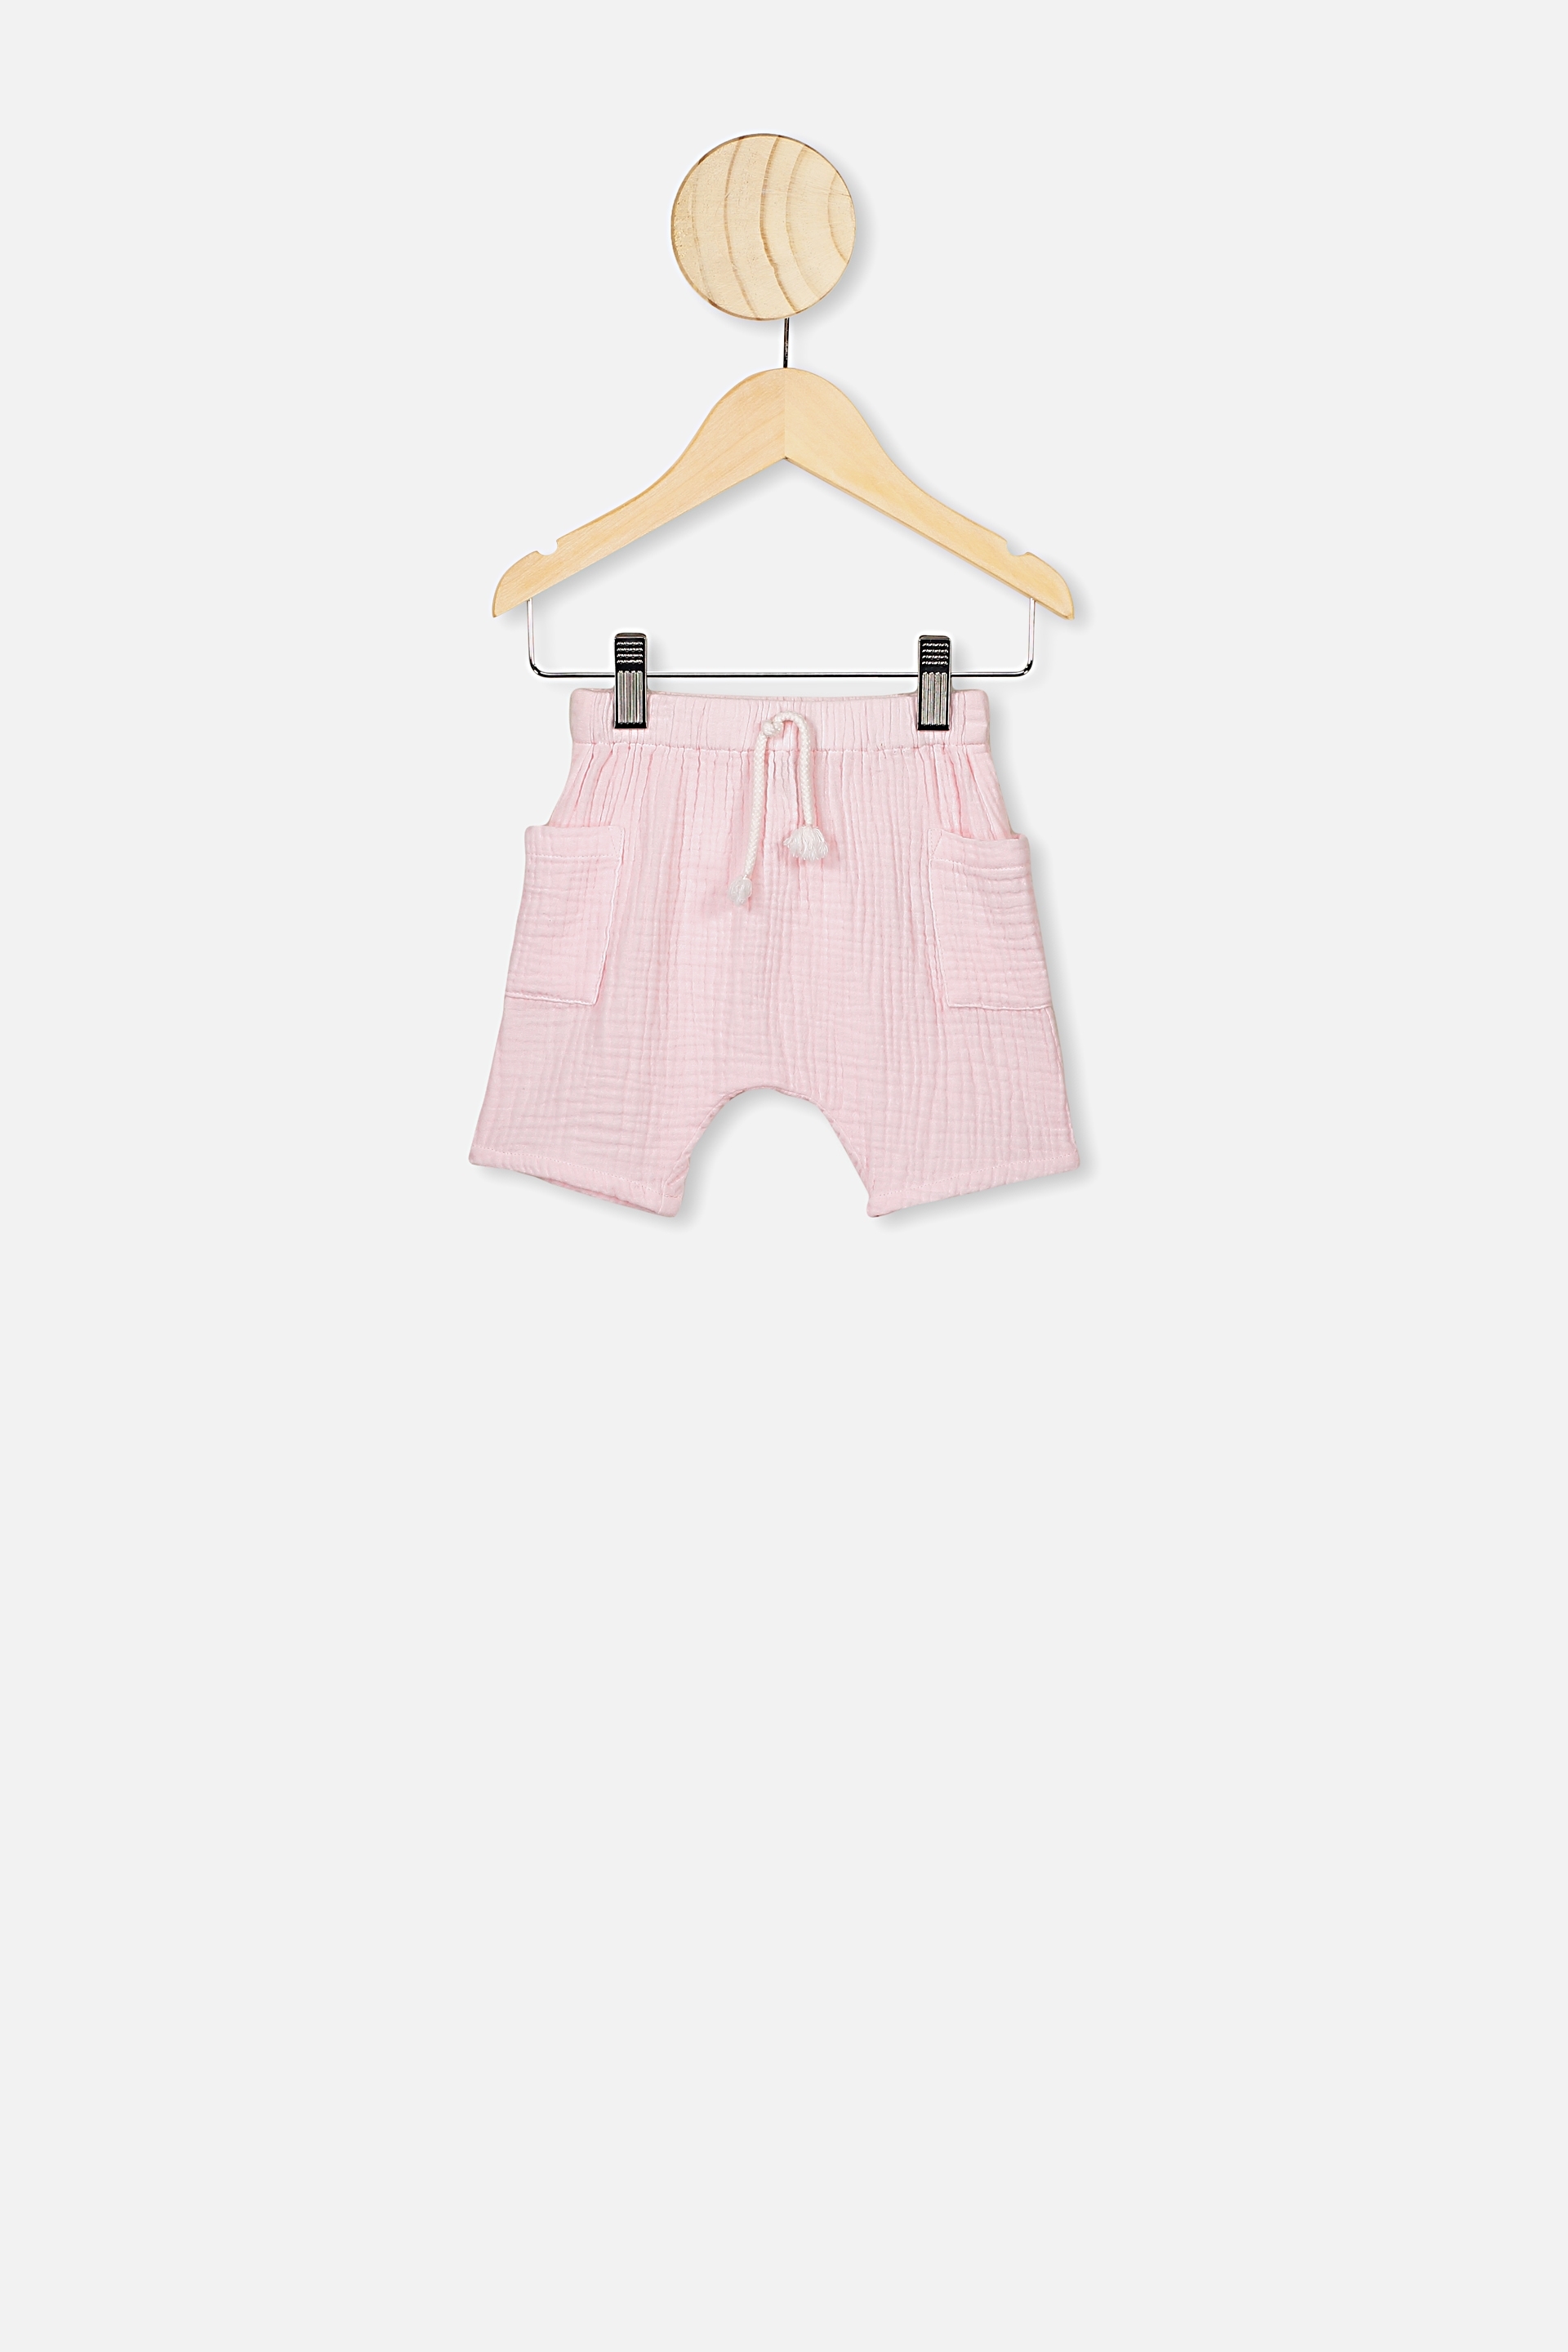 pink jordan baby clothes